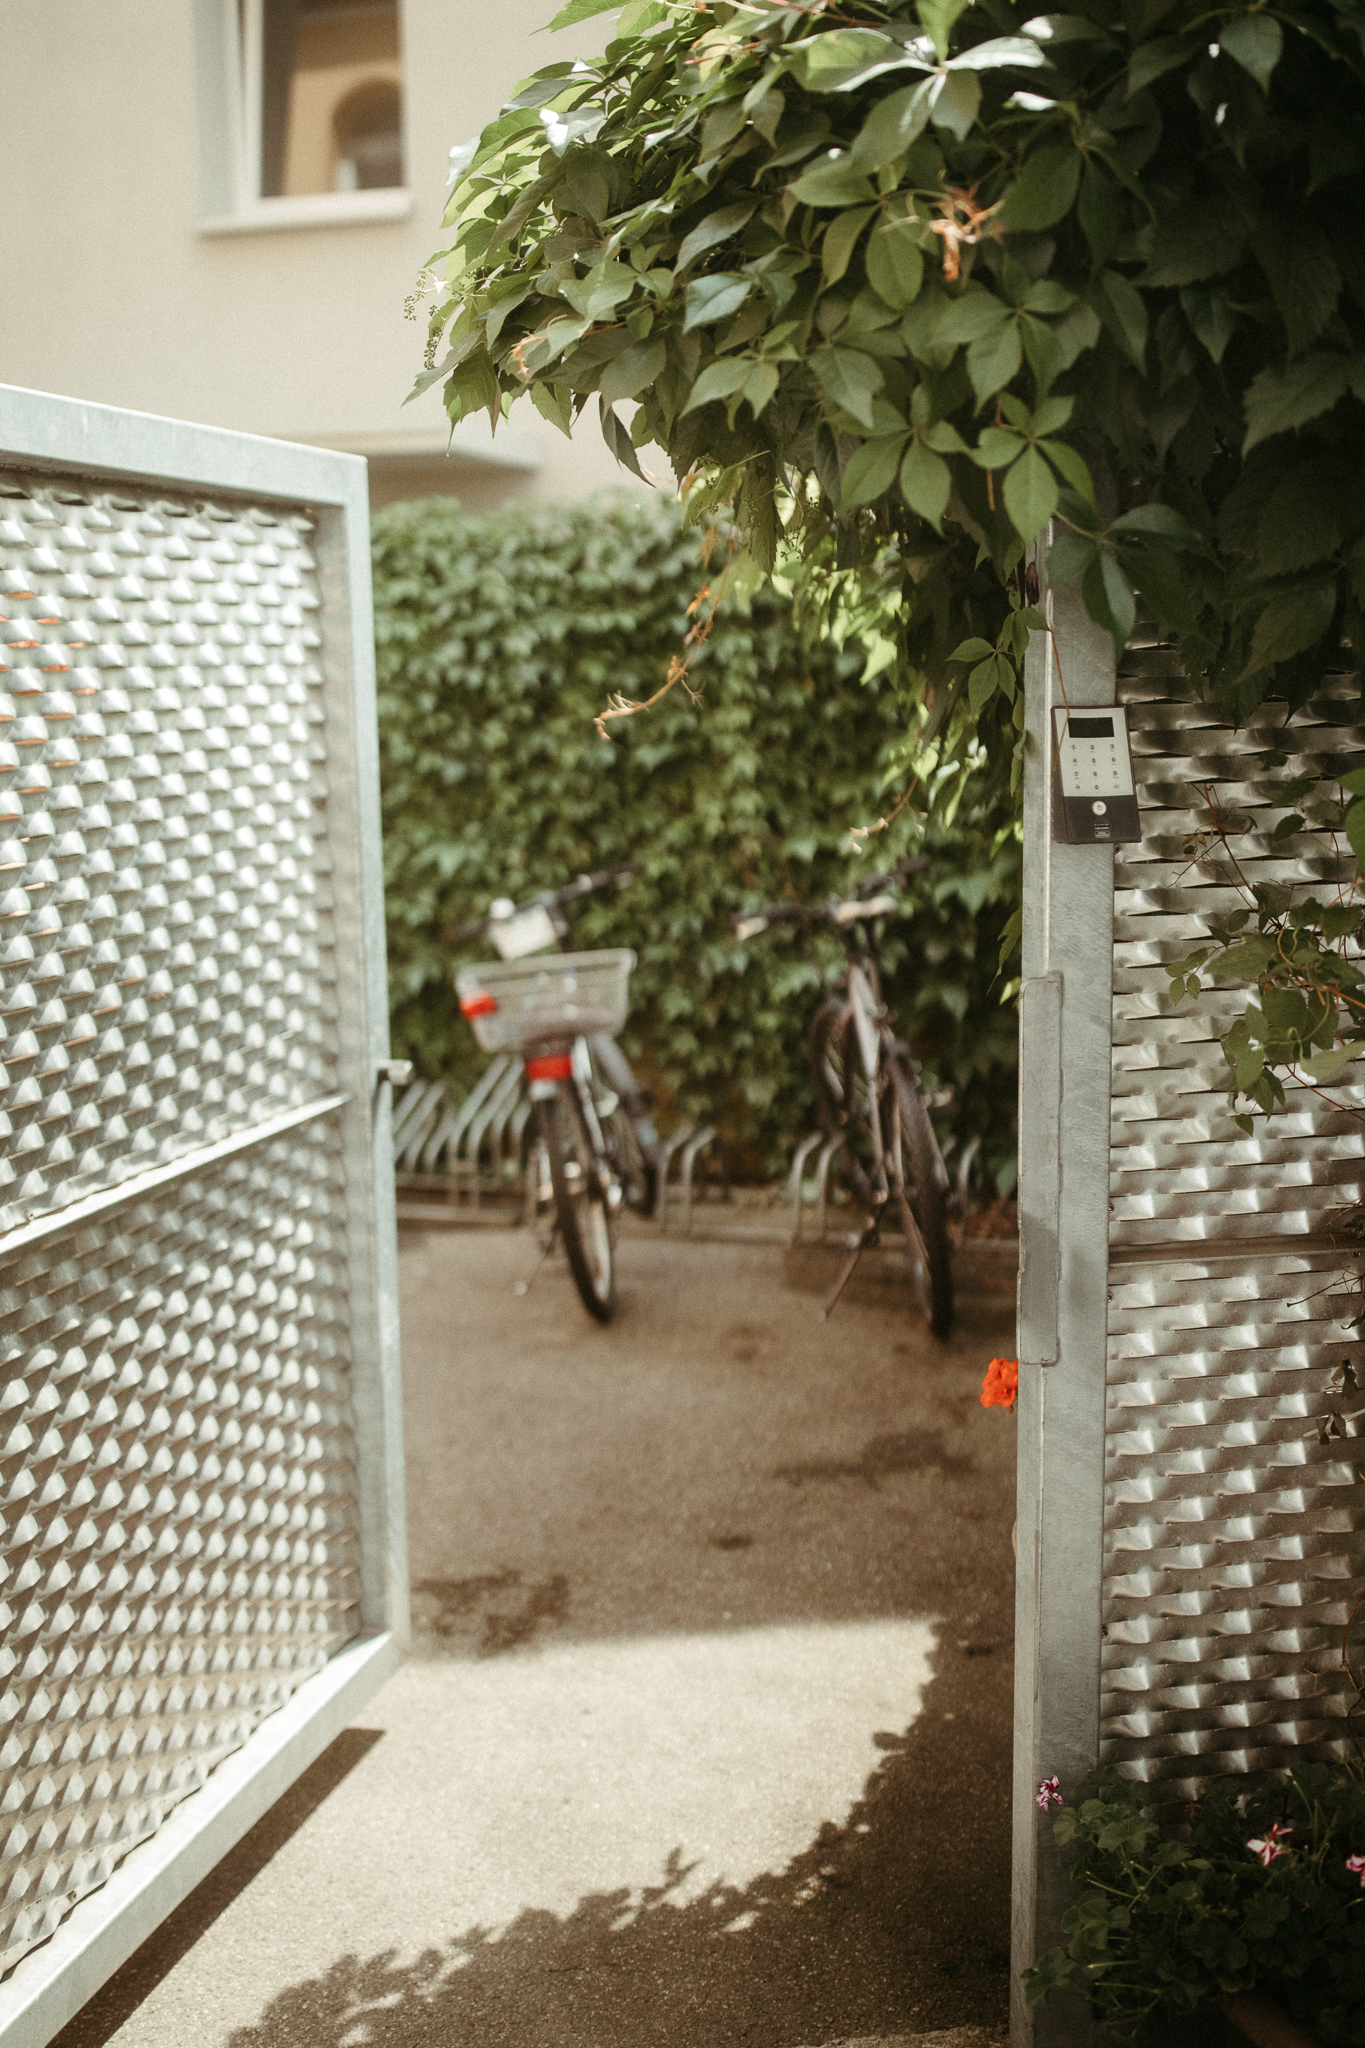 Fahrradplatz | Bike parking 